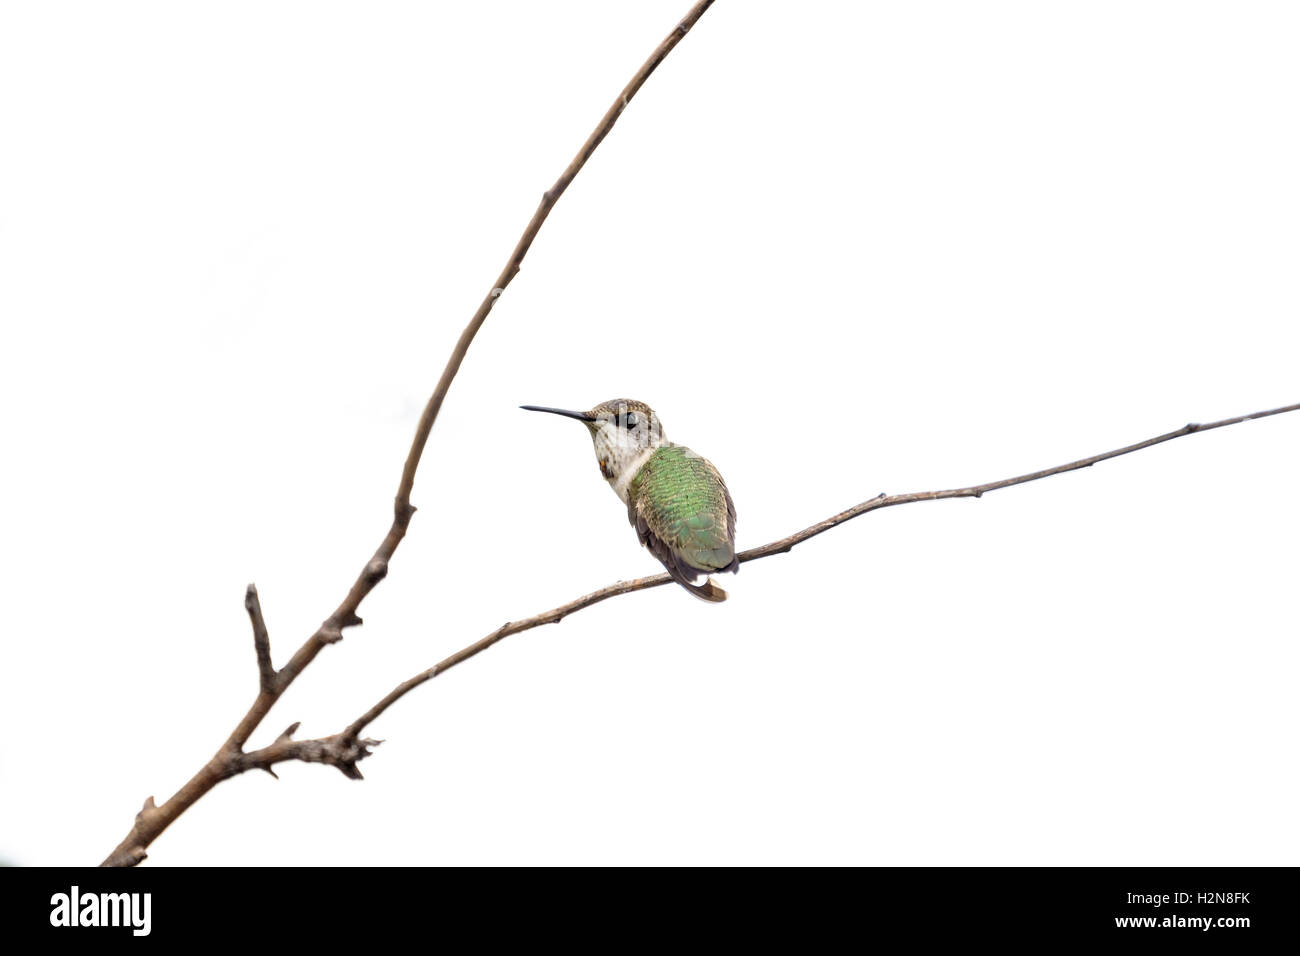 Eine unreife männliche Rubin-throated Kolibri Archilochos Colubris. Unreife Männer sehen aus wie Frauen. Oklahoma, USA Stockfoto